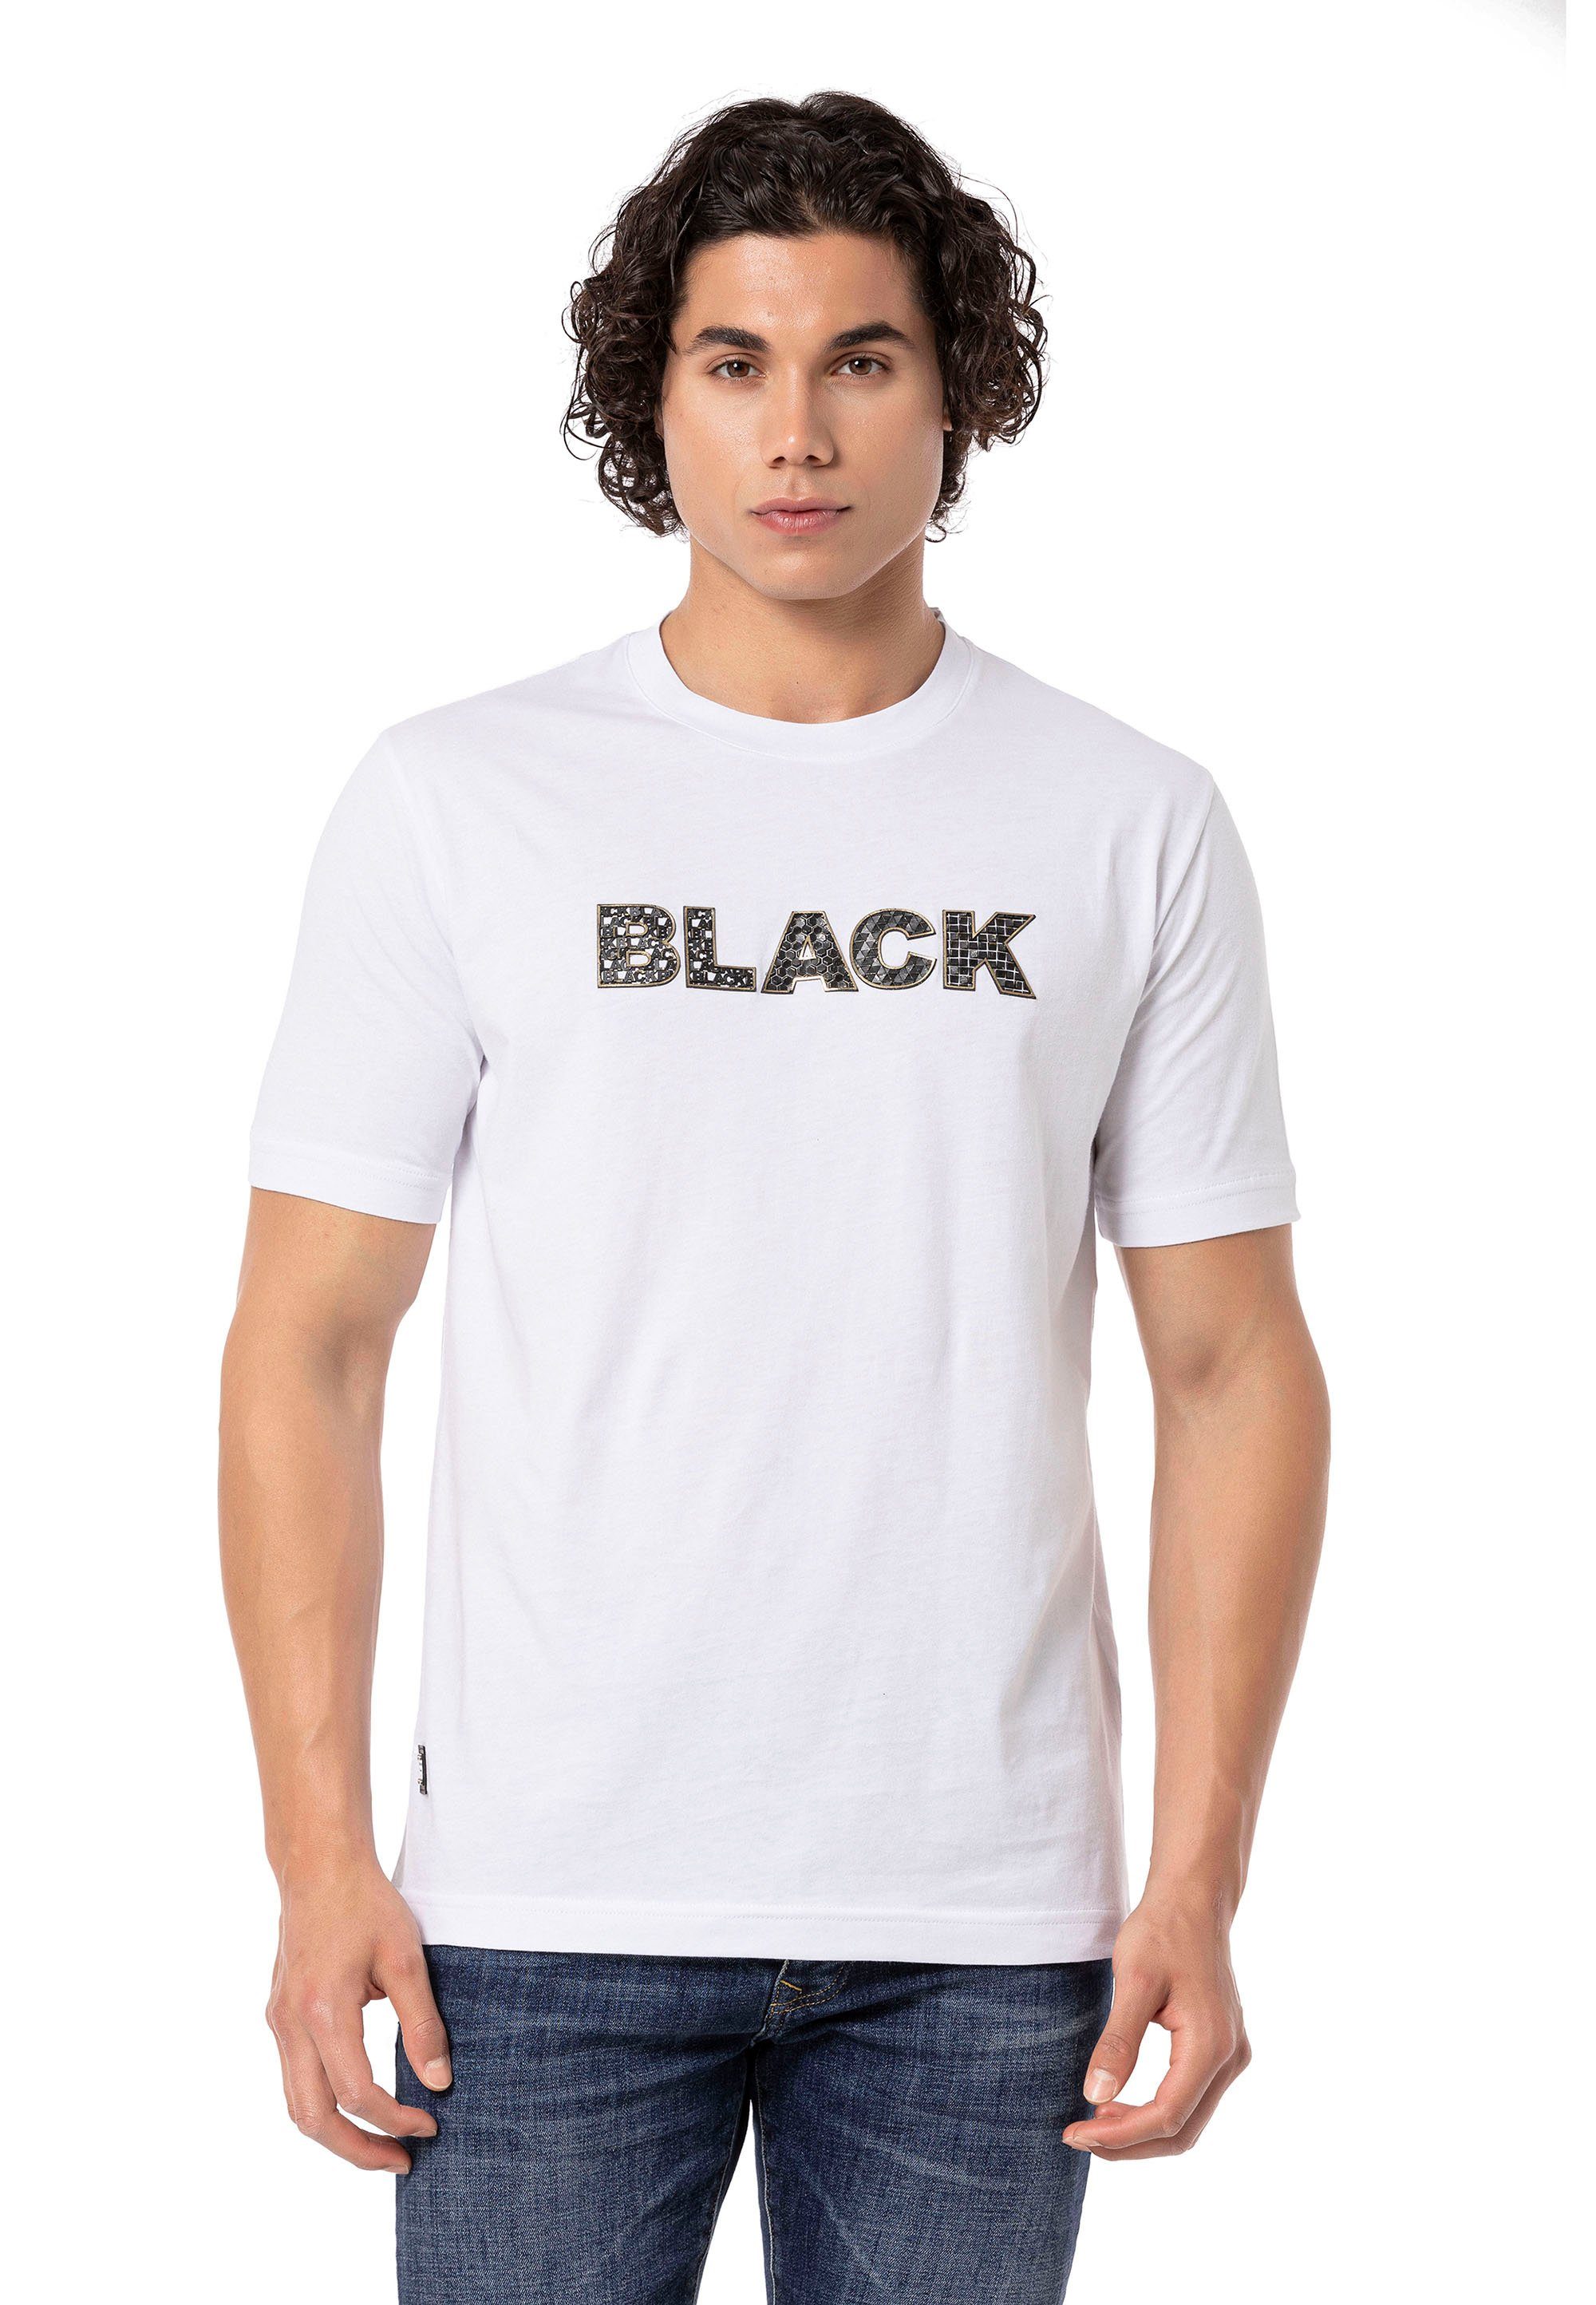 RedBridge T-Shirt Gern Print hochwertigen mit weiß